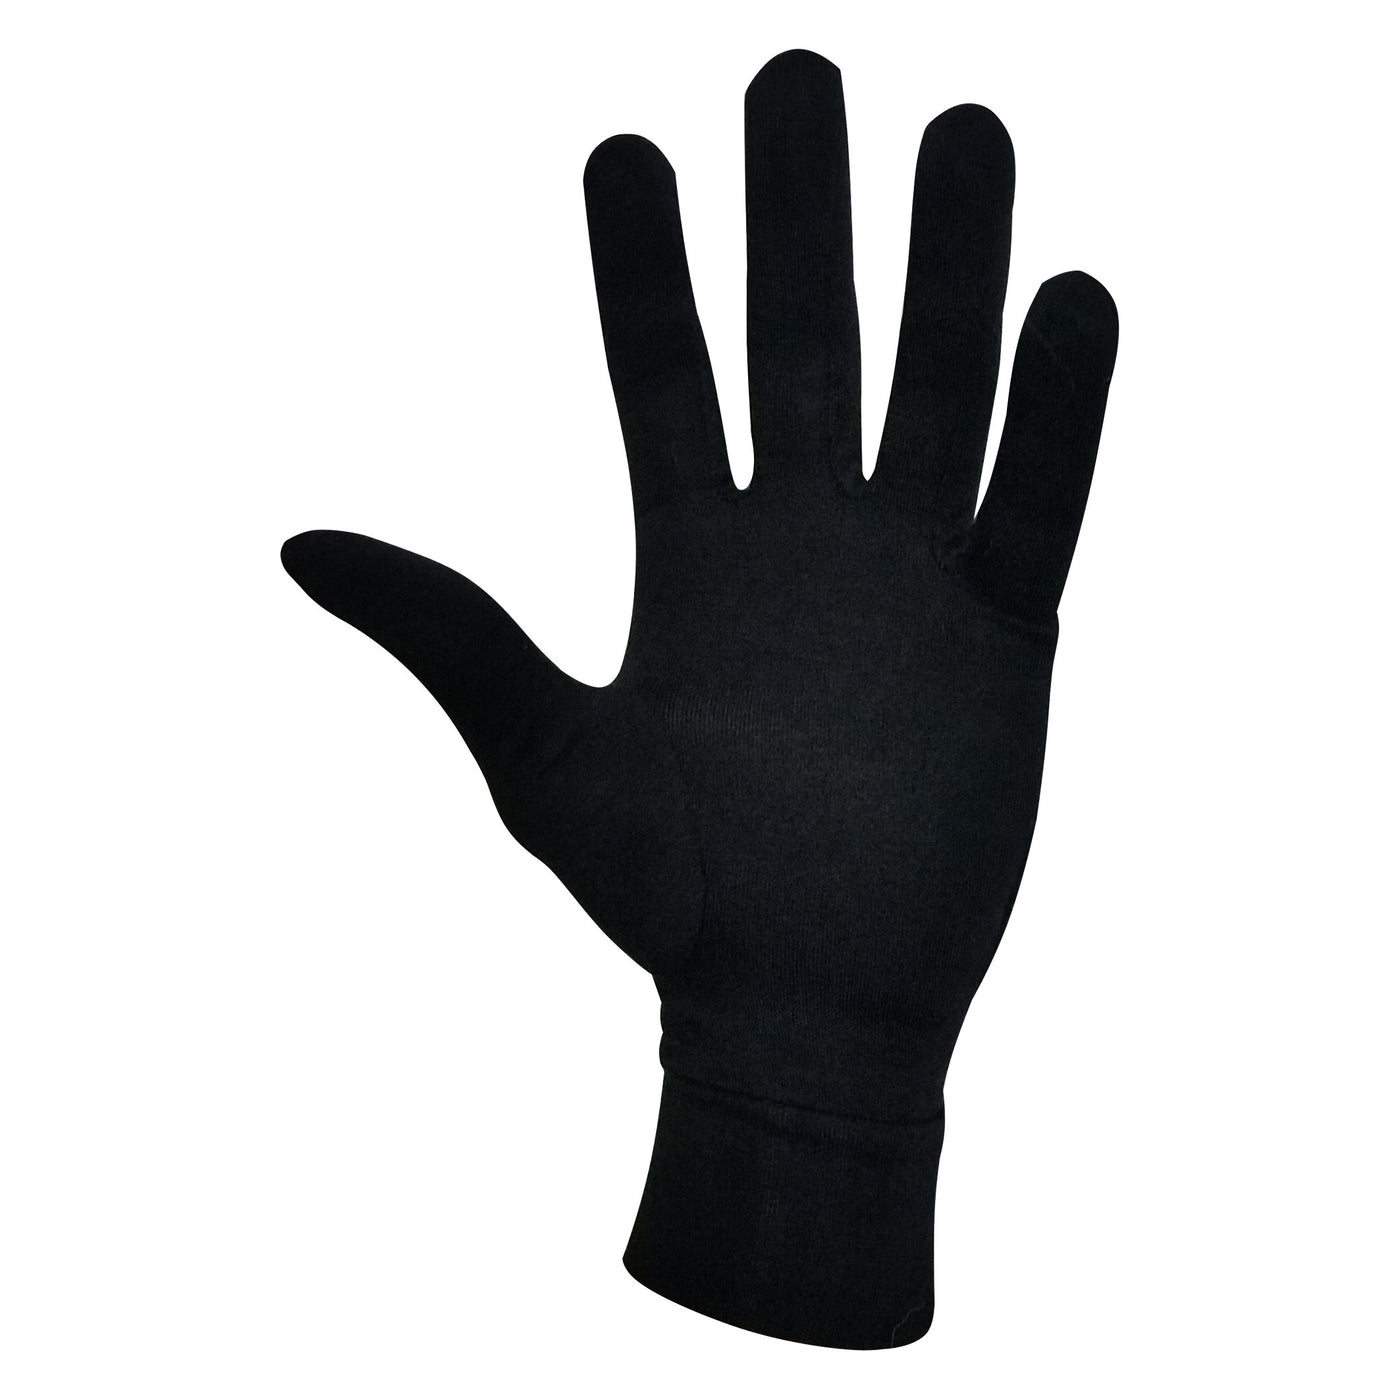 Steiner Soft-Tec Liner Gloves in Black